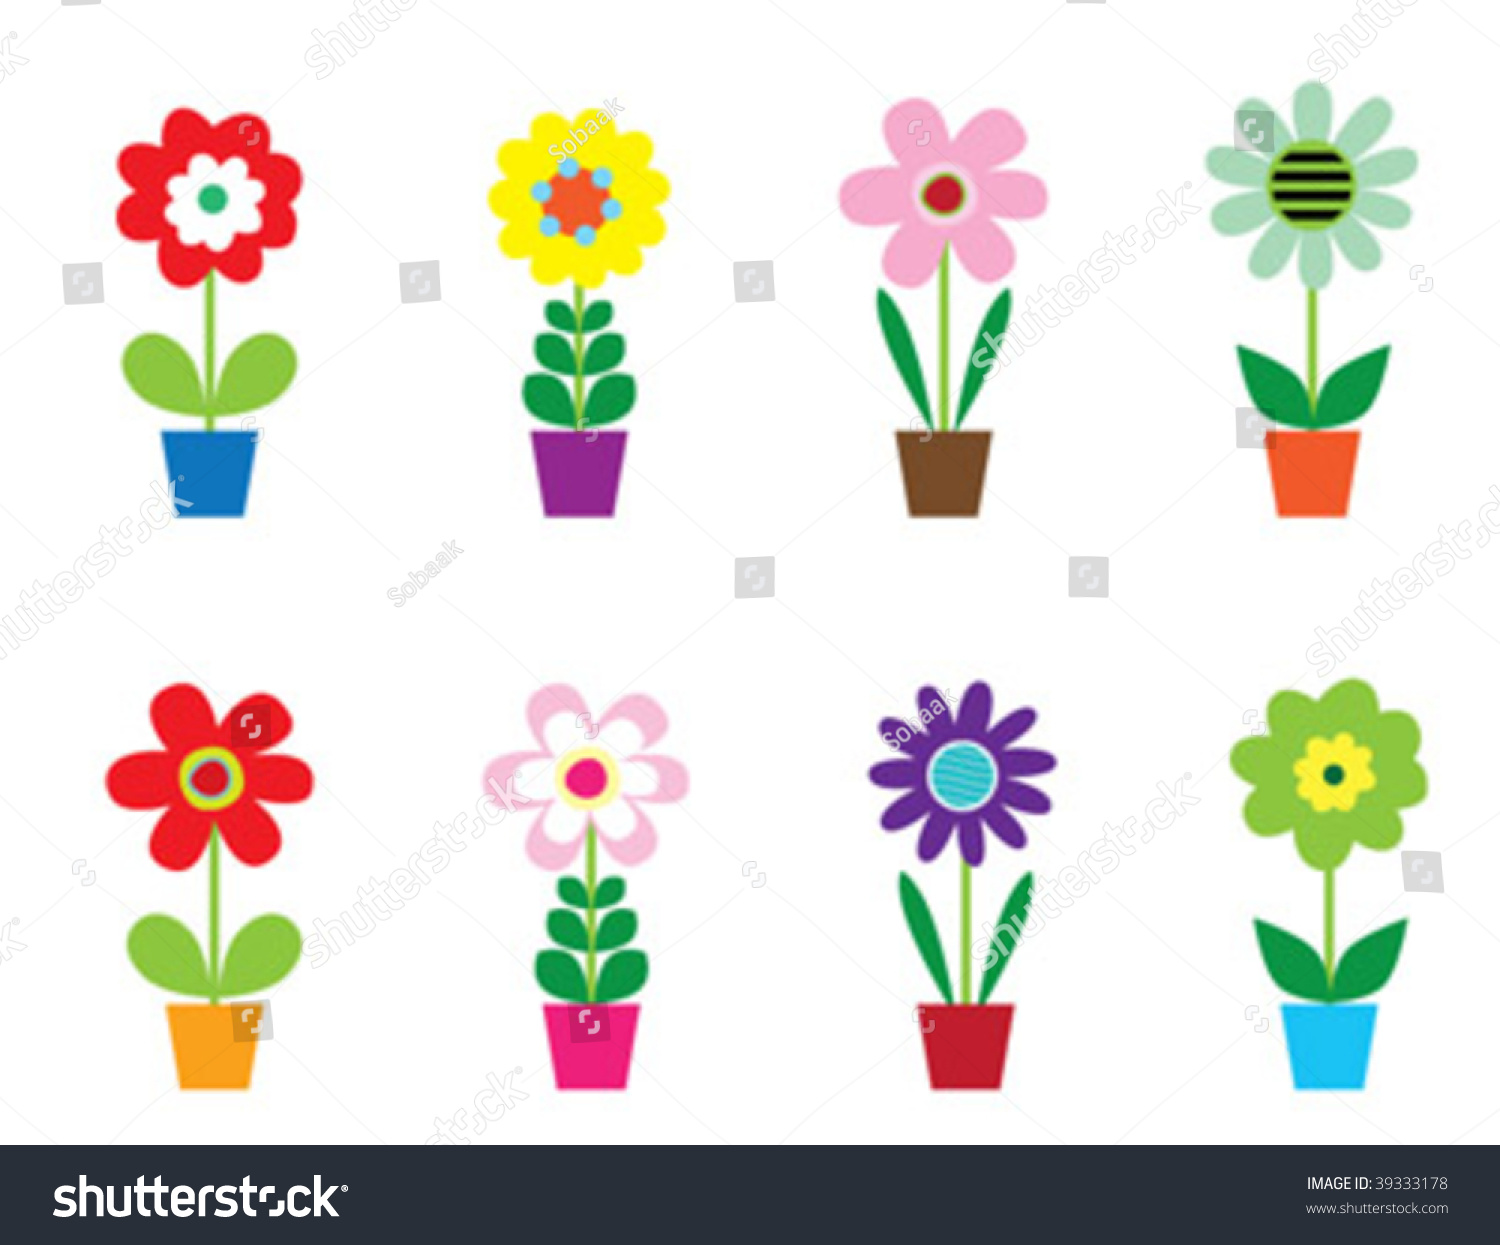 Vector Flowers In Pots - 39333178 : Shutterstock